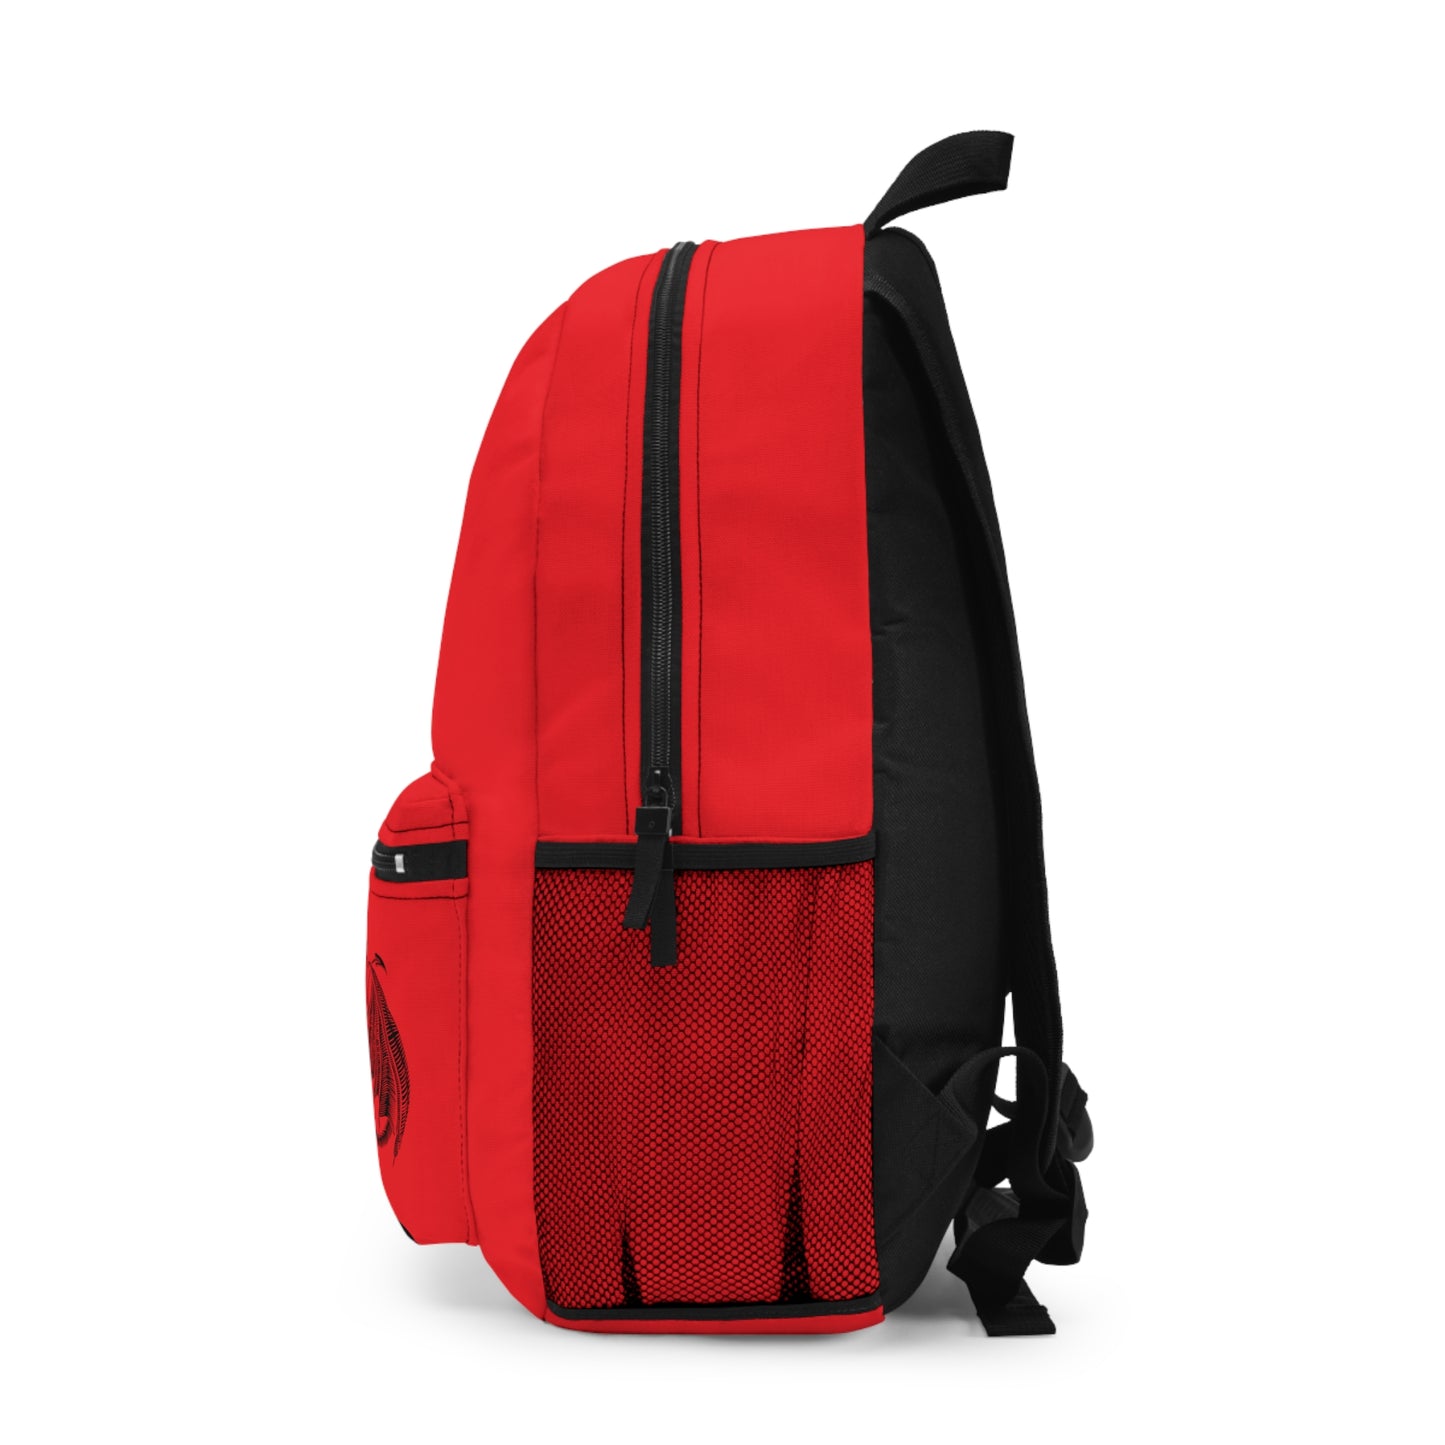 Gaming Dragons and Dice Backpack, Adjustable Shoulder Straps, 18"